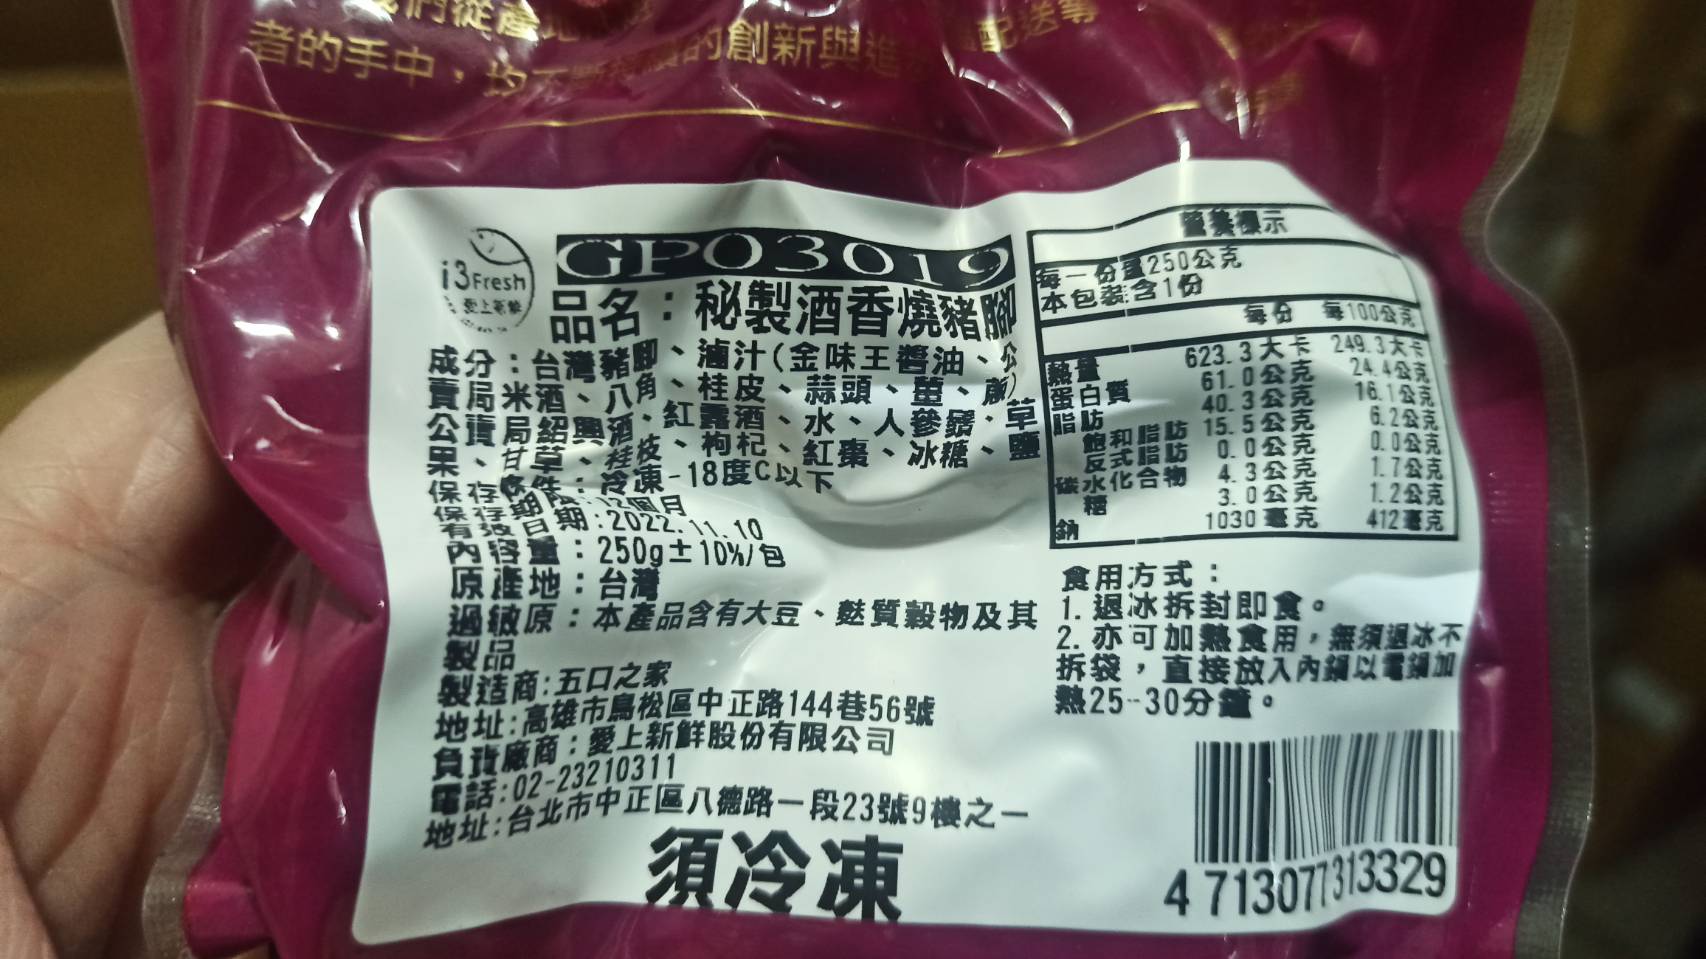 【愛上美味】秘製酒香燒豬腳9包(250g±10%/包)